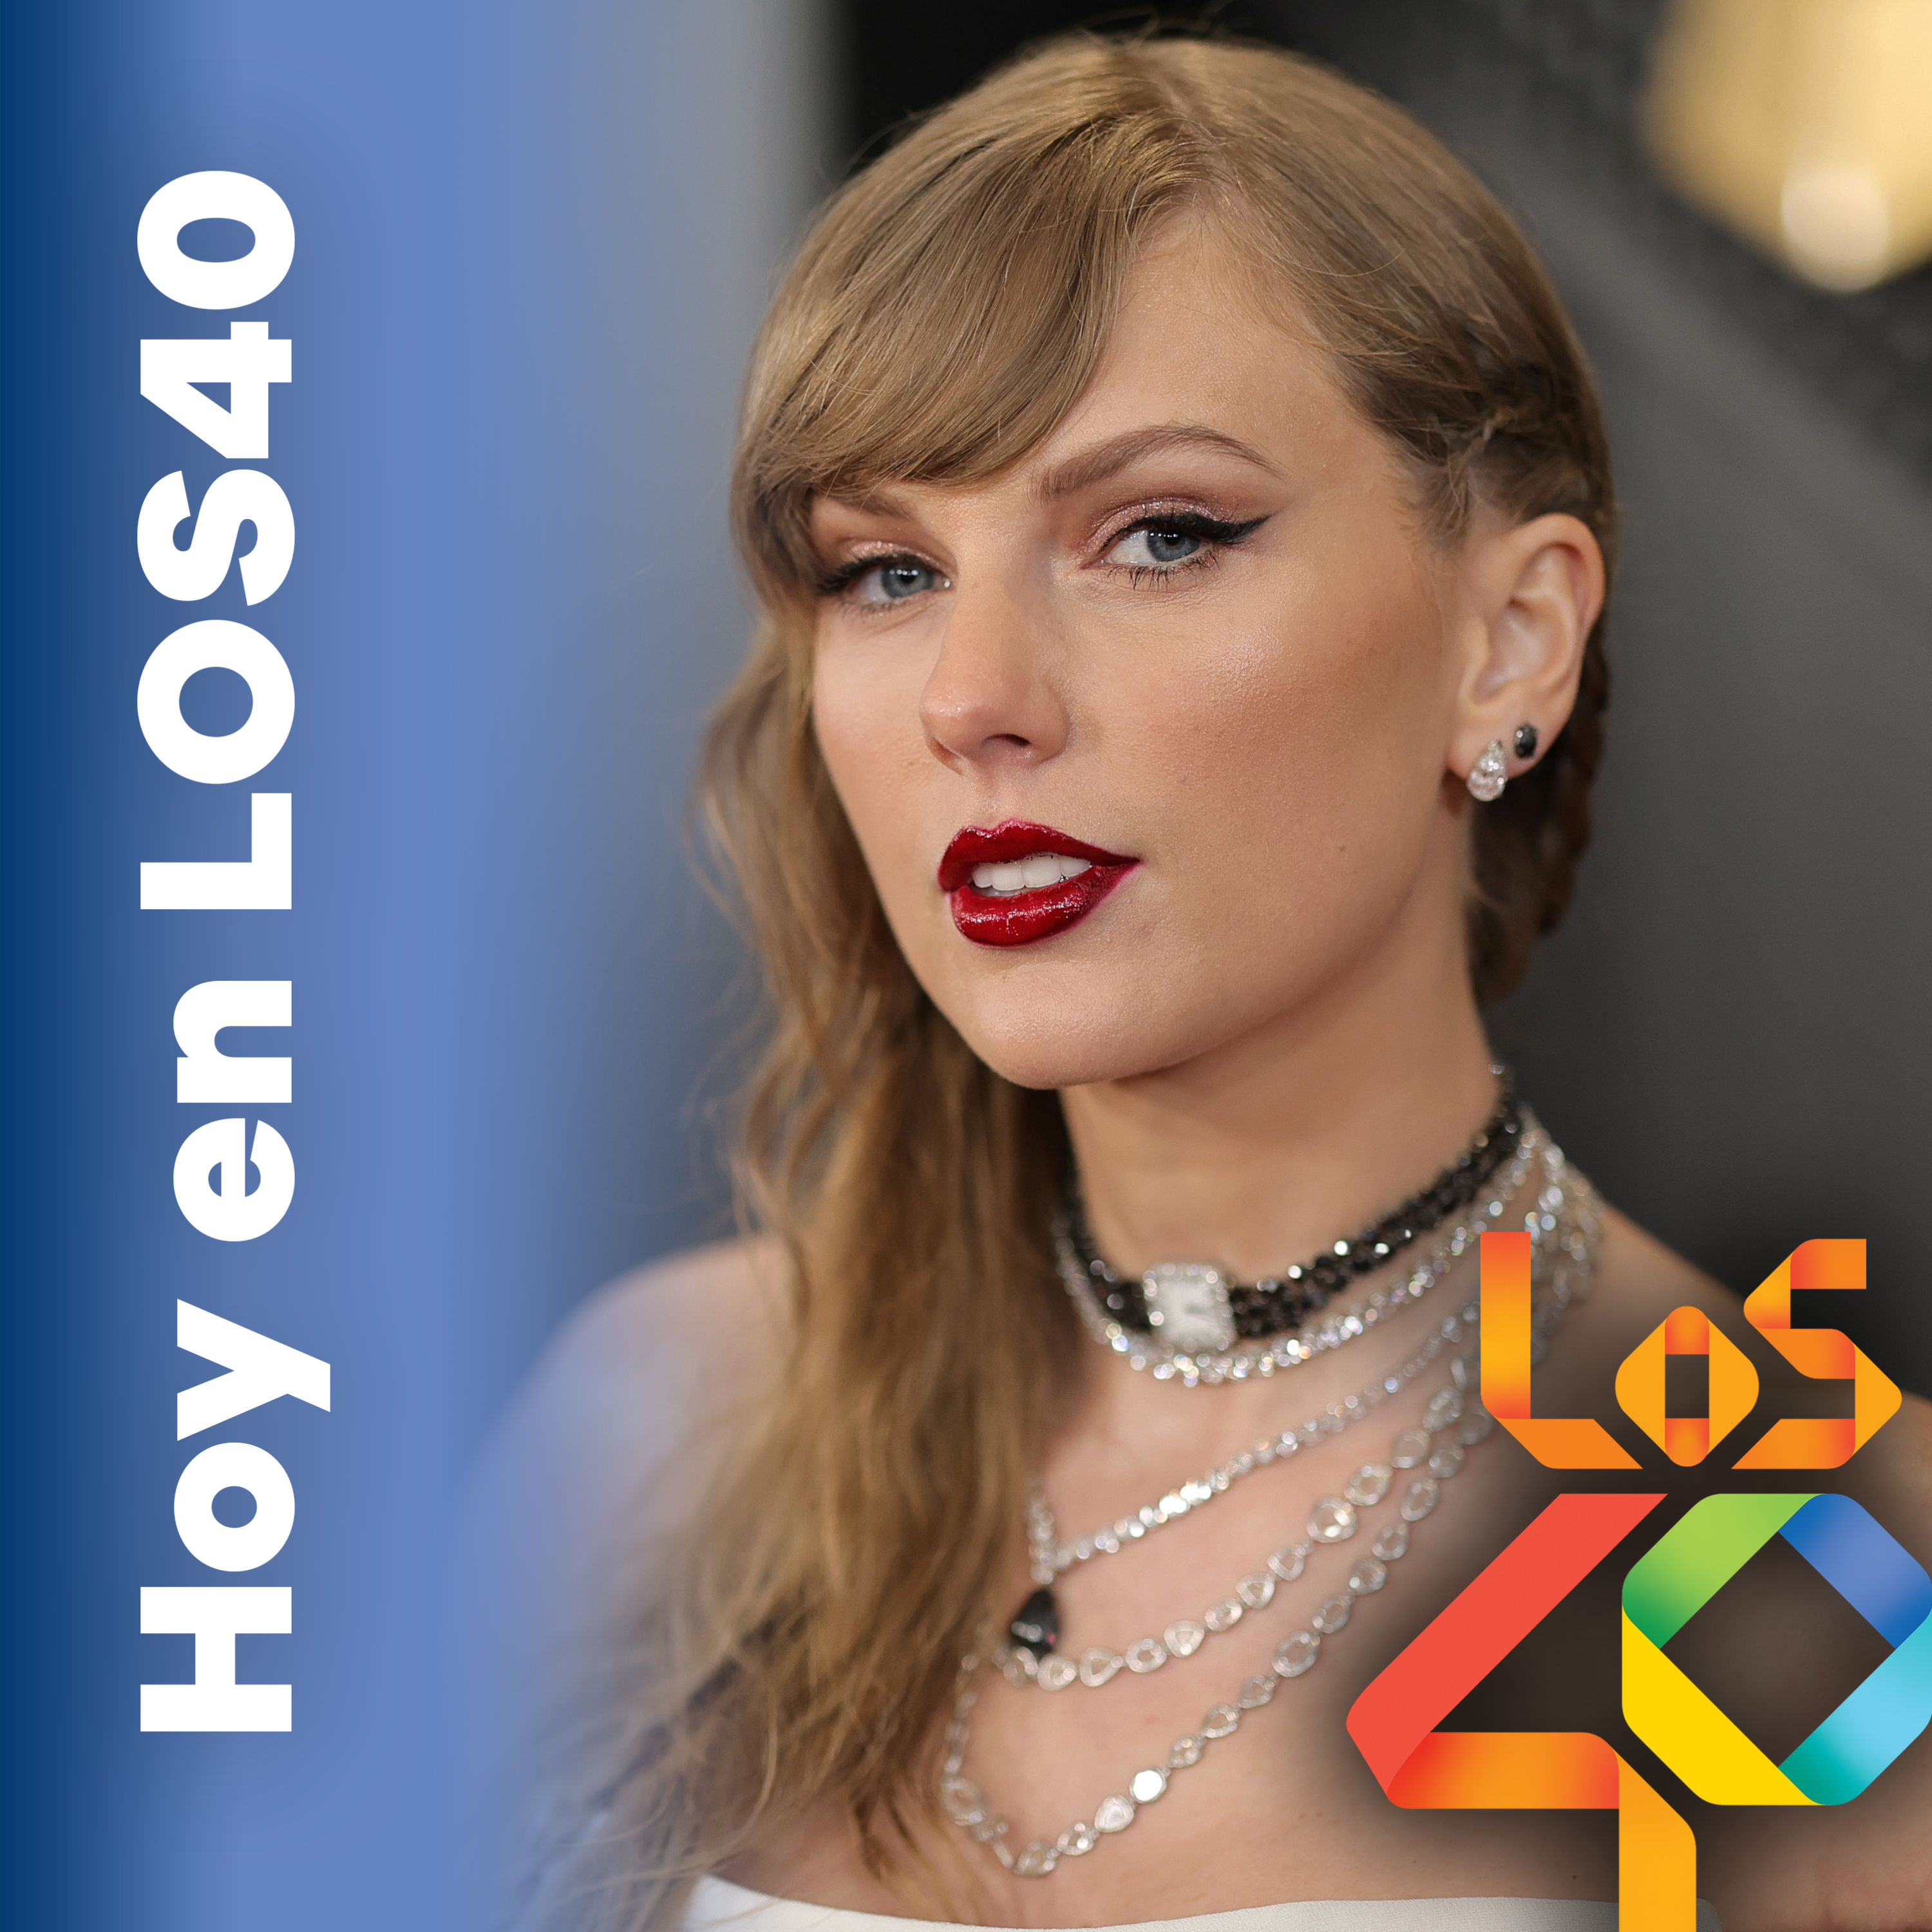 Del tracklist del disco de Taylor Swift a lo más destacado de la Gala 10 de  'OT 2023'. – Noticias del 6 de febrero – HOY EN LOS40 – Podium Podcast